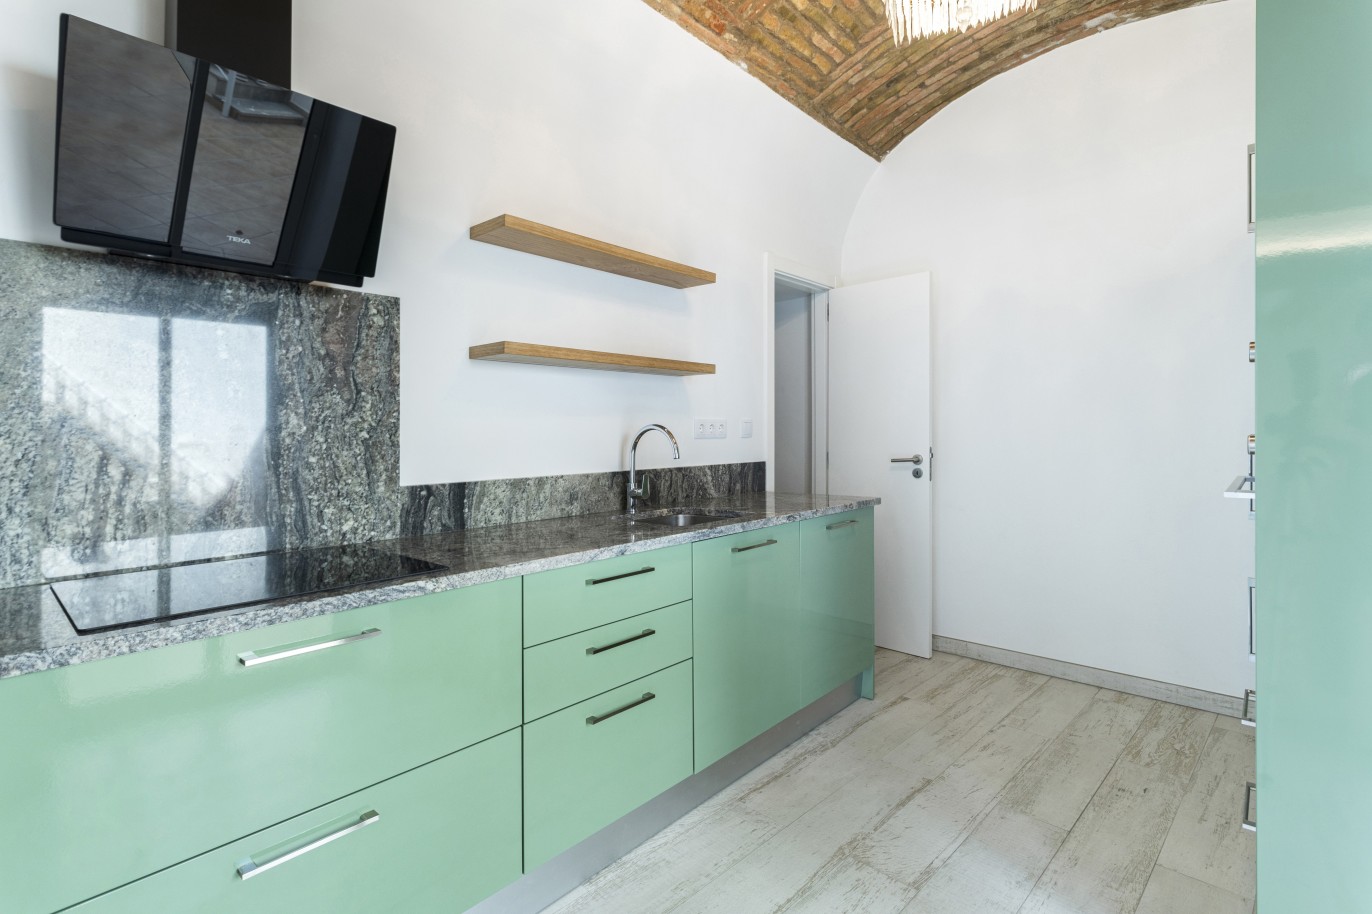 Renovierte Villa mit 3 Schlafzimmern zu verkaufen in der Innenstadt von Olhão, Algarve_227445